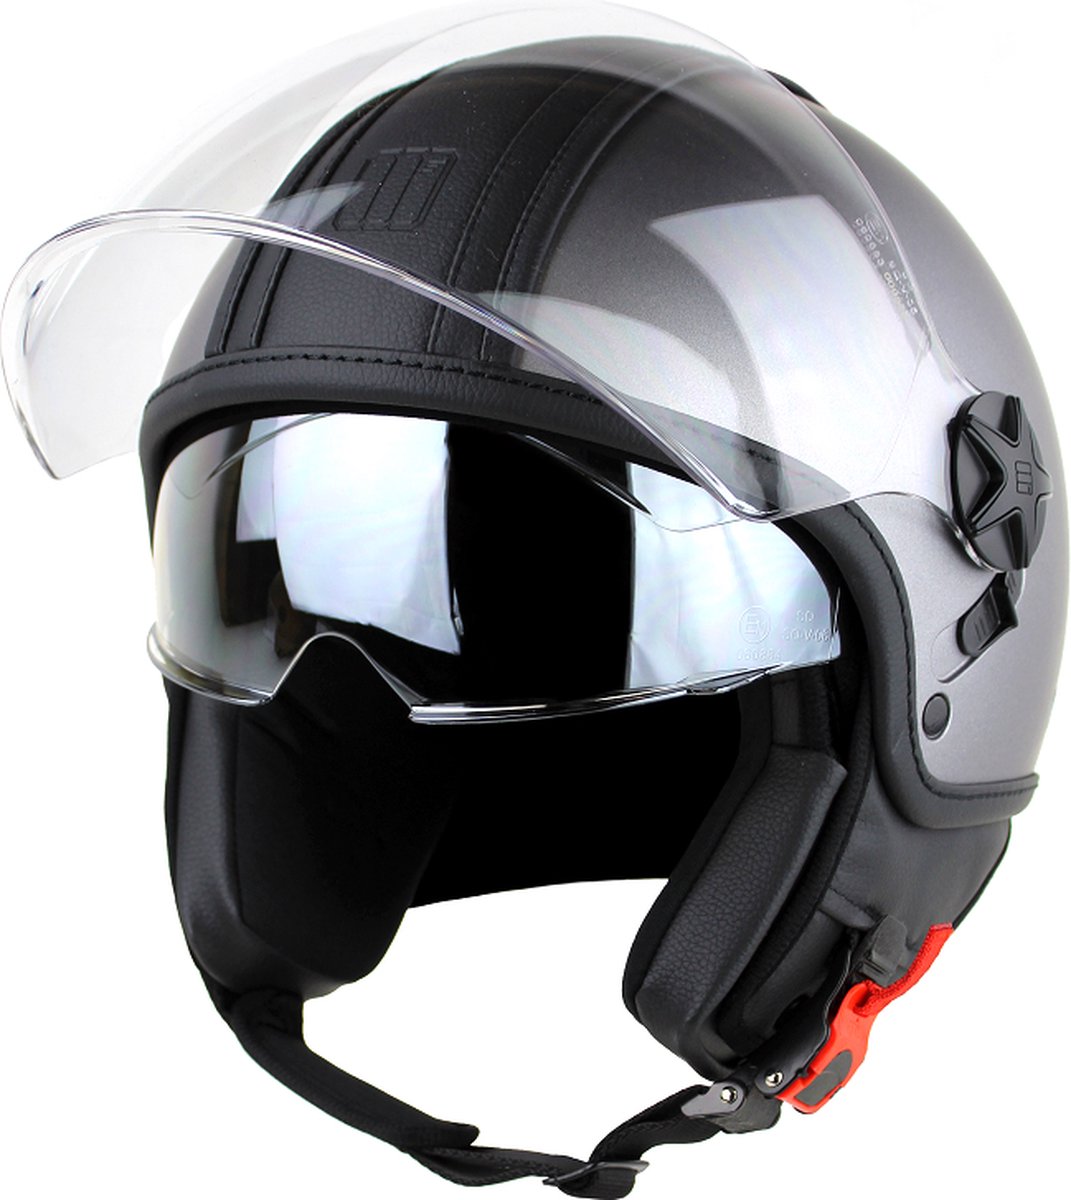 Motocubo - top cube - jethelm - dubbel vizier - mat grijs - zwart leer - maat XS - snorfiets, scooter en motorhelm - ECE 22.06